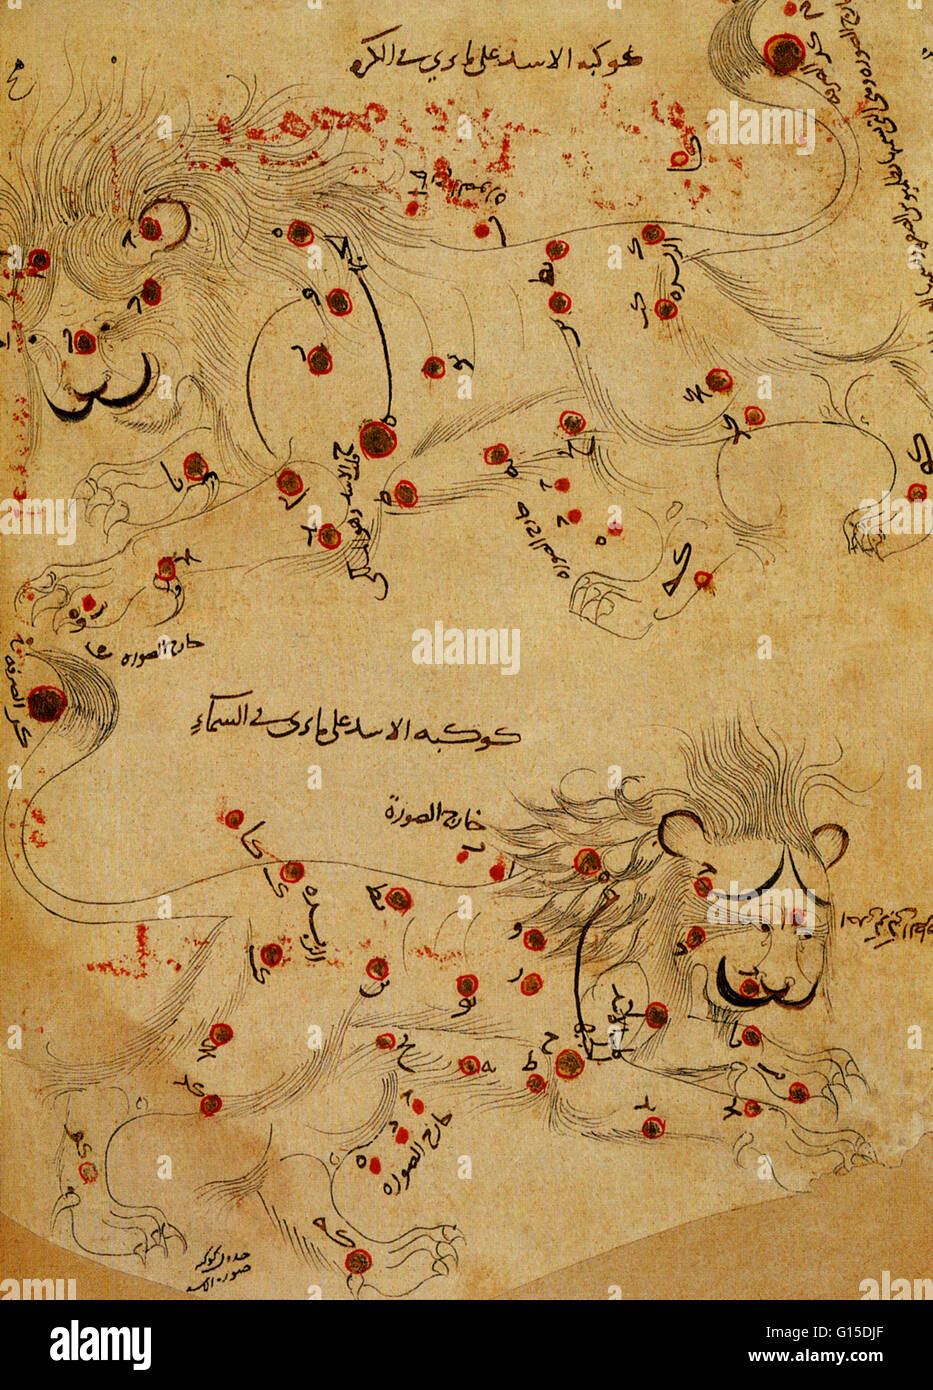 Costellazione del leone come appare nel libro delle stelle fisse,' scritto in 964 dall'astronomo persiano Abd al-Rahman al-Sufi. La costellazione è mostrato in due viste, uno come visto dalla terra e uno come si vede sul lato esterno di un globo celeste. Leo è Foto Stock